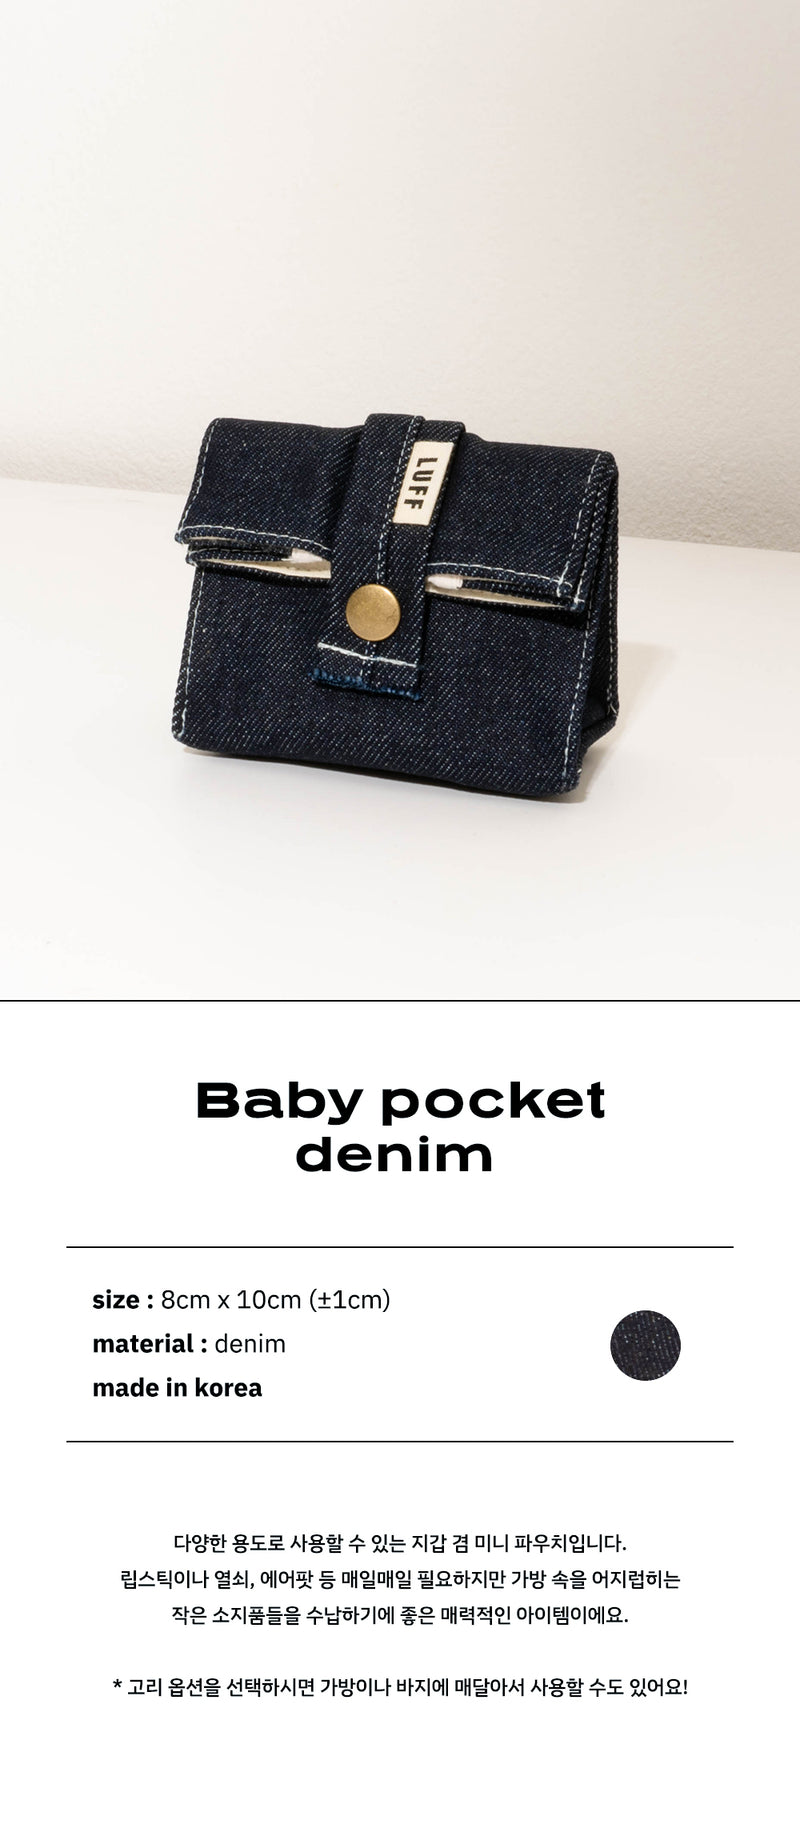 baby pocket - denim